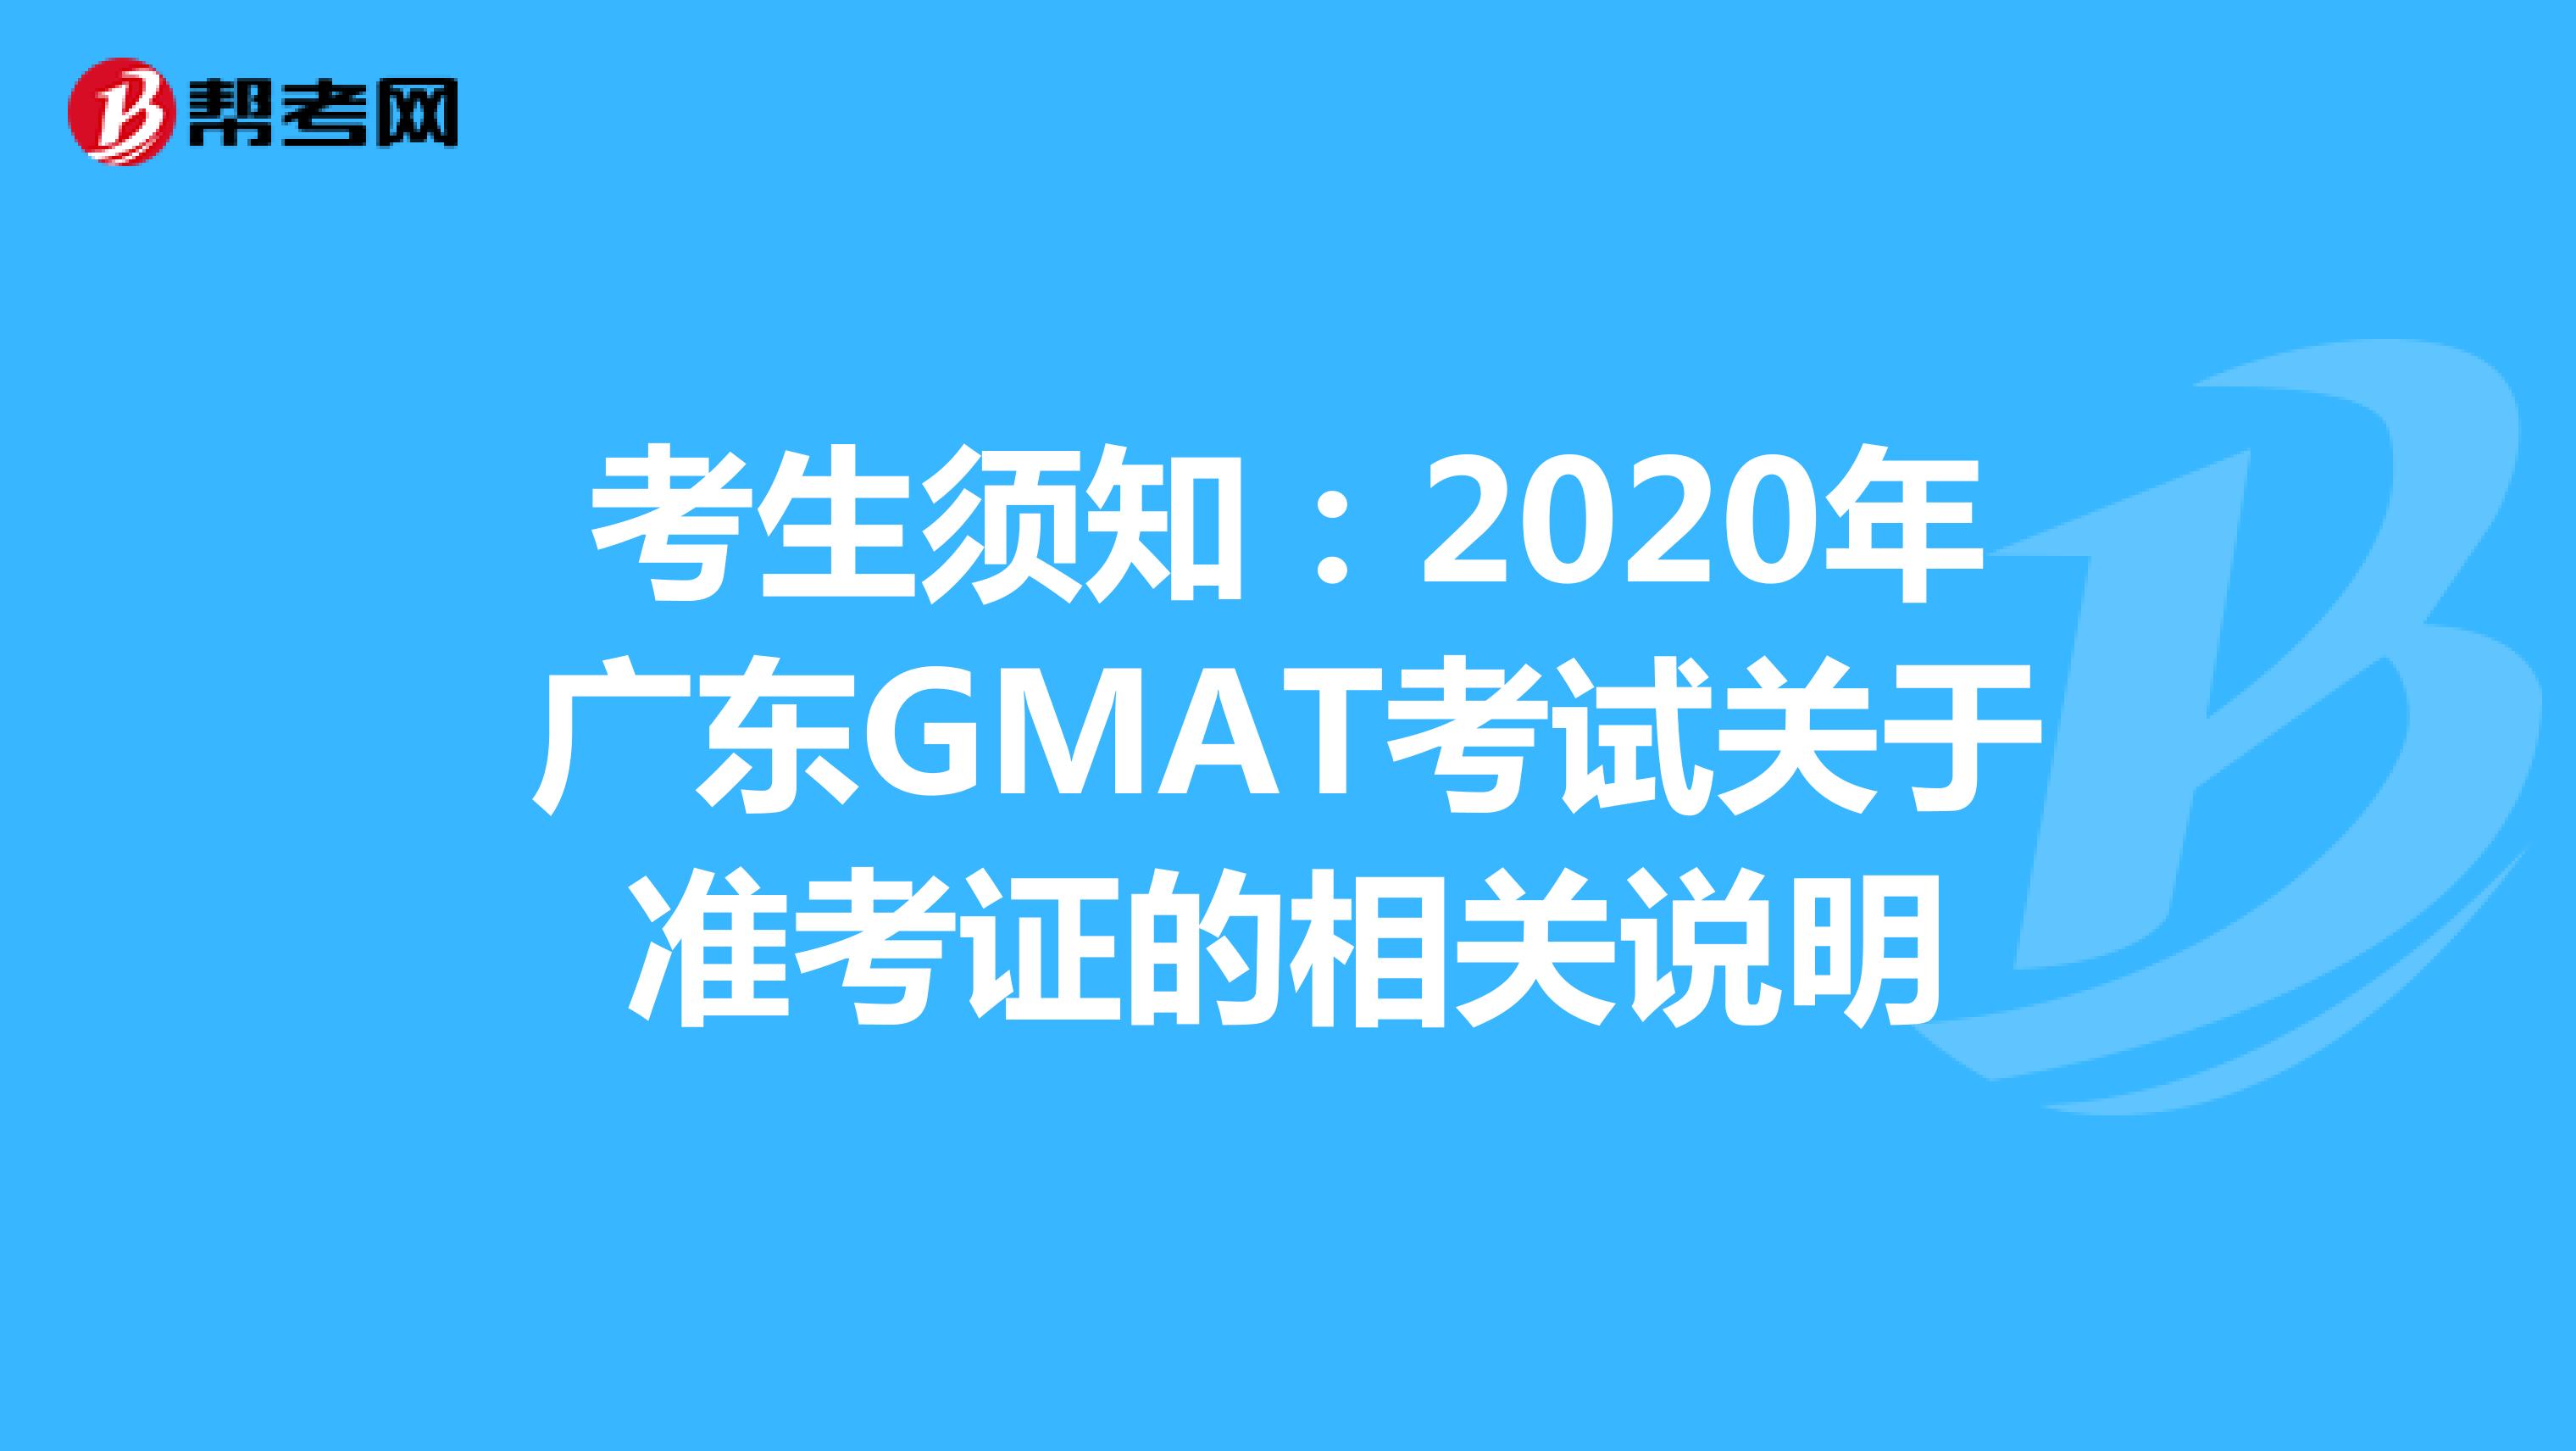 考生须知：2020年广东GMAT考试关于准考证的相关说明